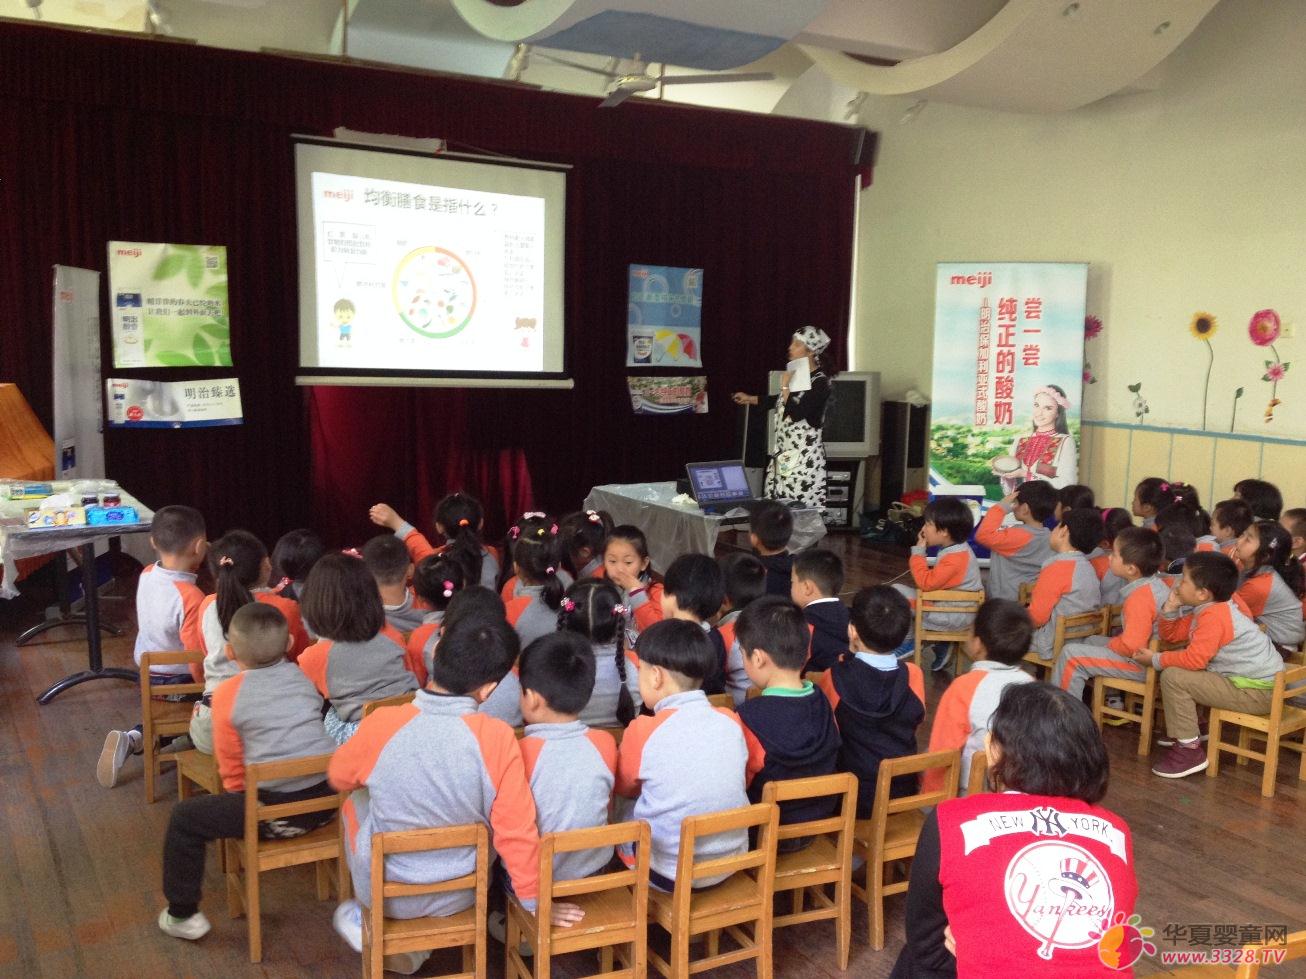 明治在中国开展食品教育活动